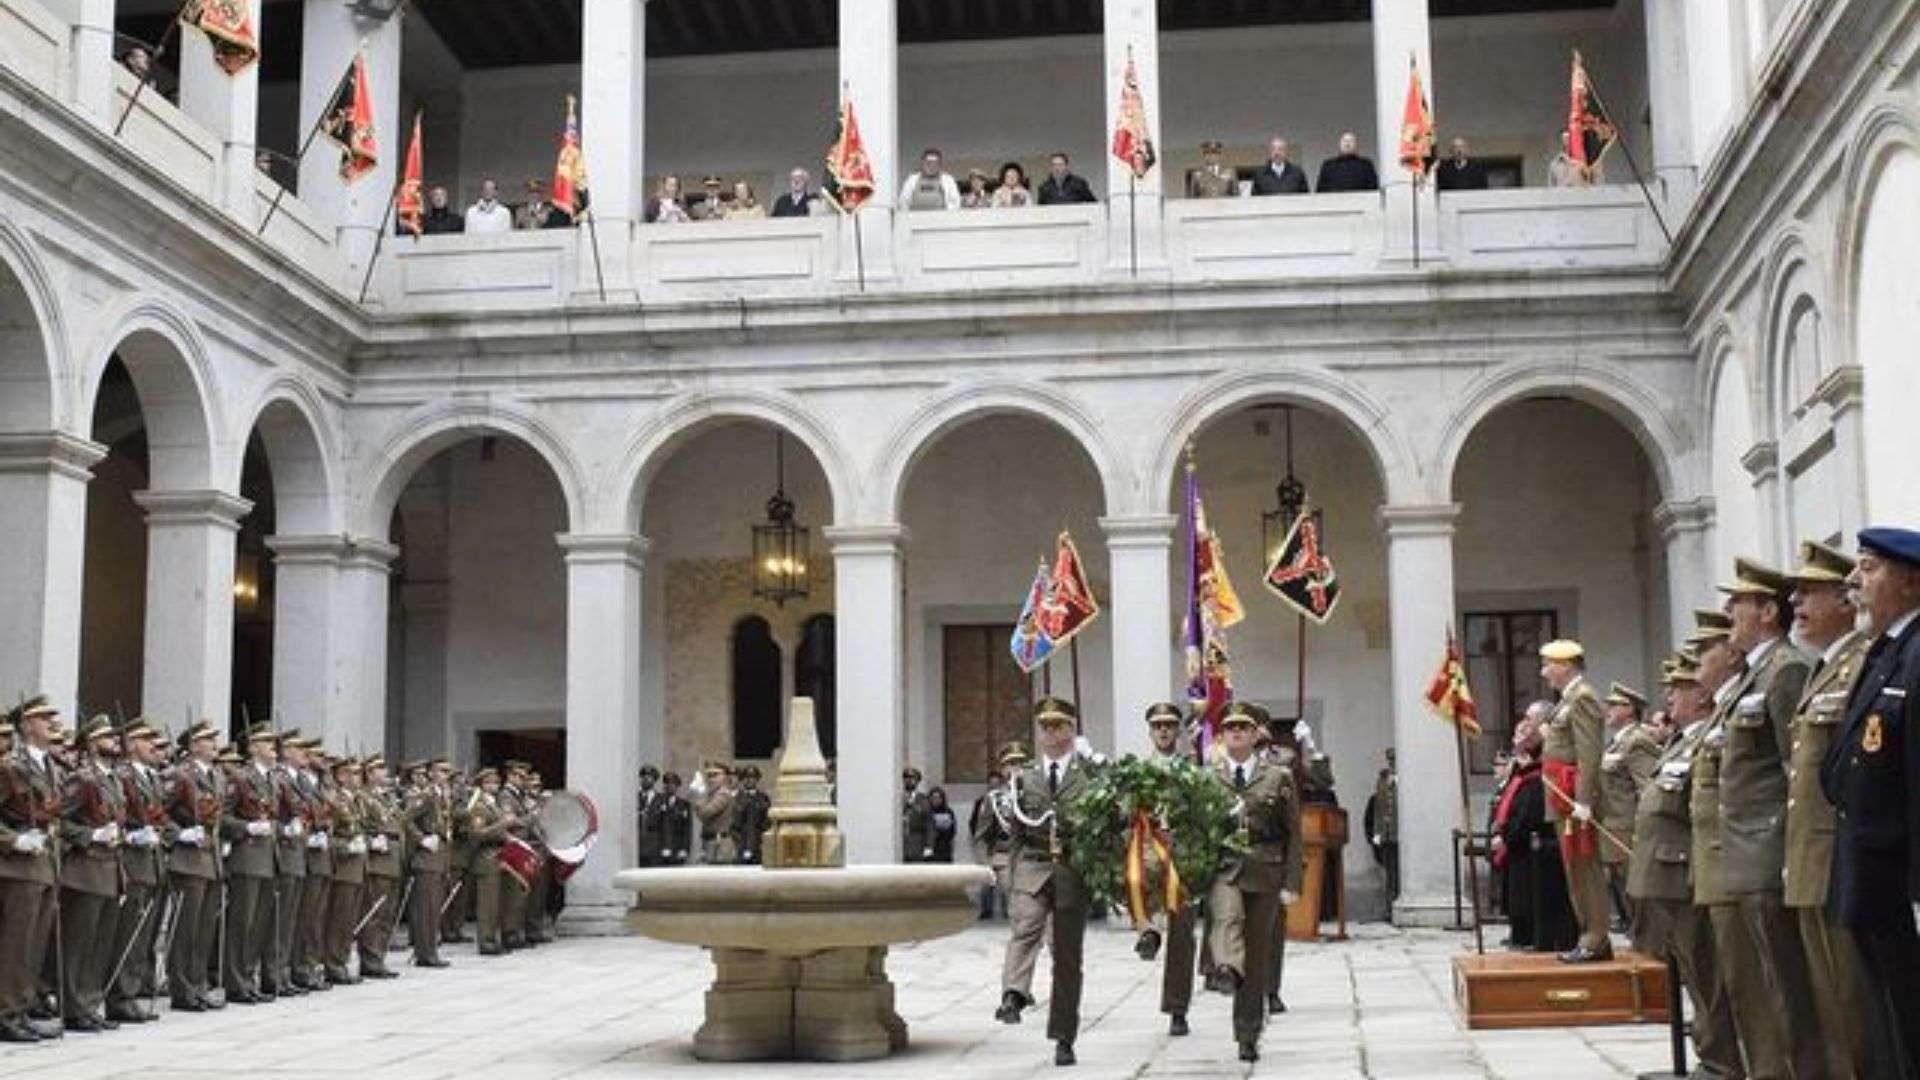 El Real Colegio de Artillería, la academia militar más antigua del mundo en activo. Fotografía de Alcazar de Segovia